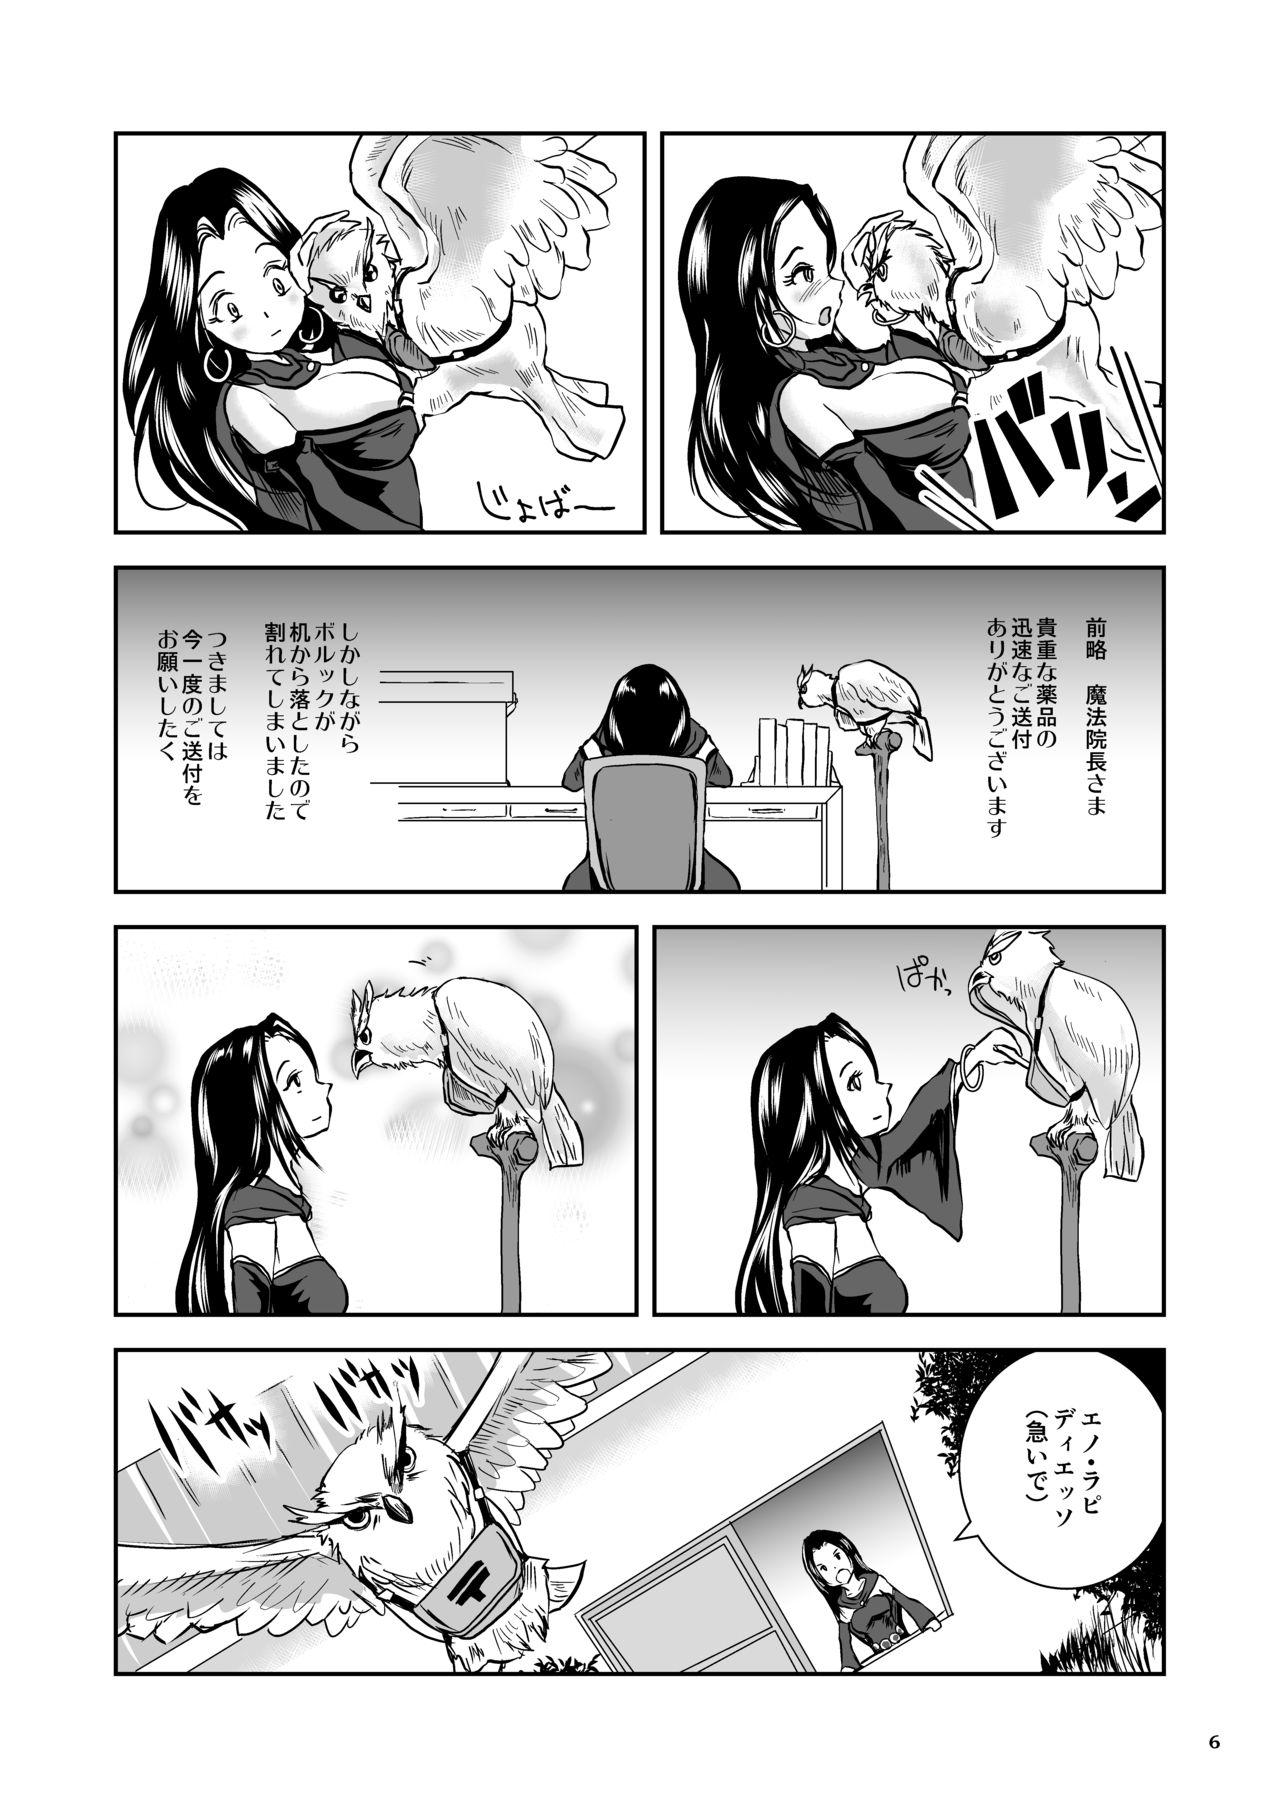 Bhabi Oonamekuji to Kurokami no Mahoutsukai - Parasitized Giant Slugs V.S. Sorceress of the Black Hair as Aura Doublepenetration - Page 6